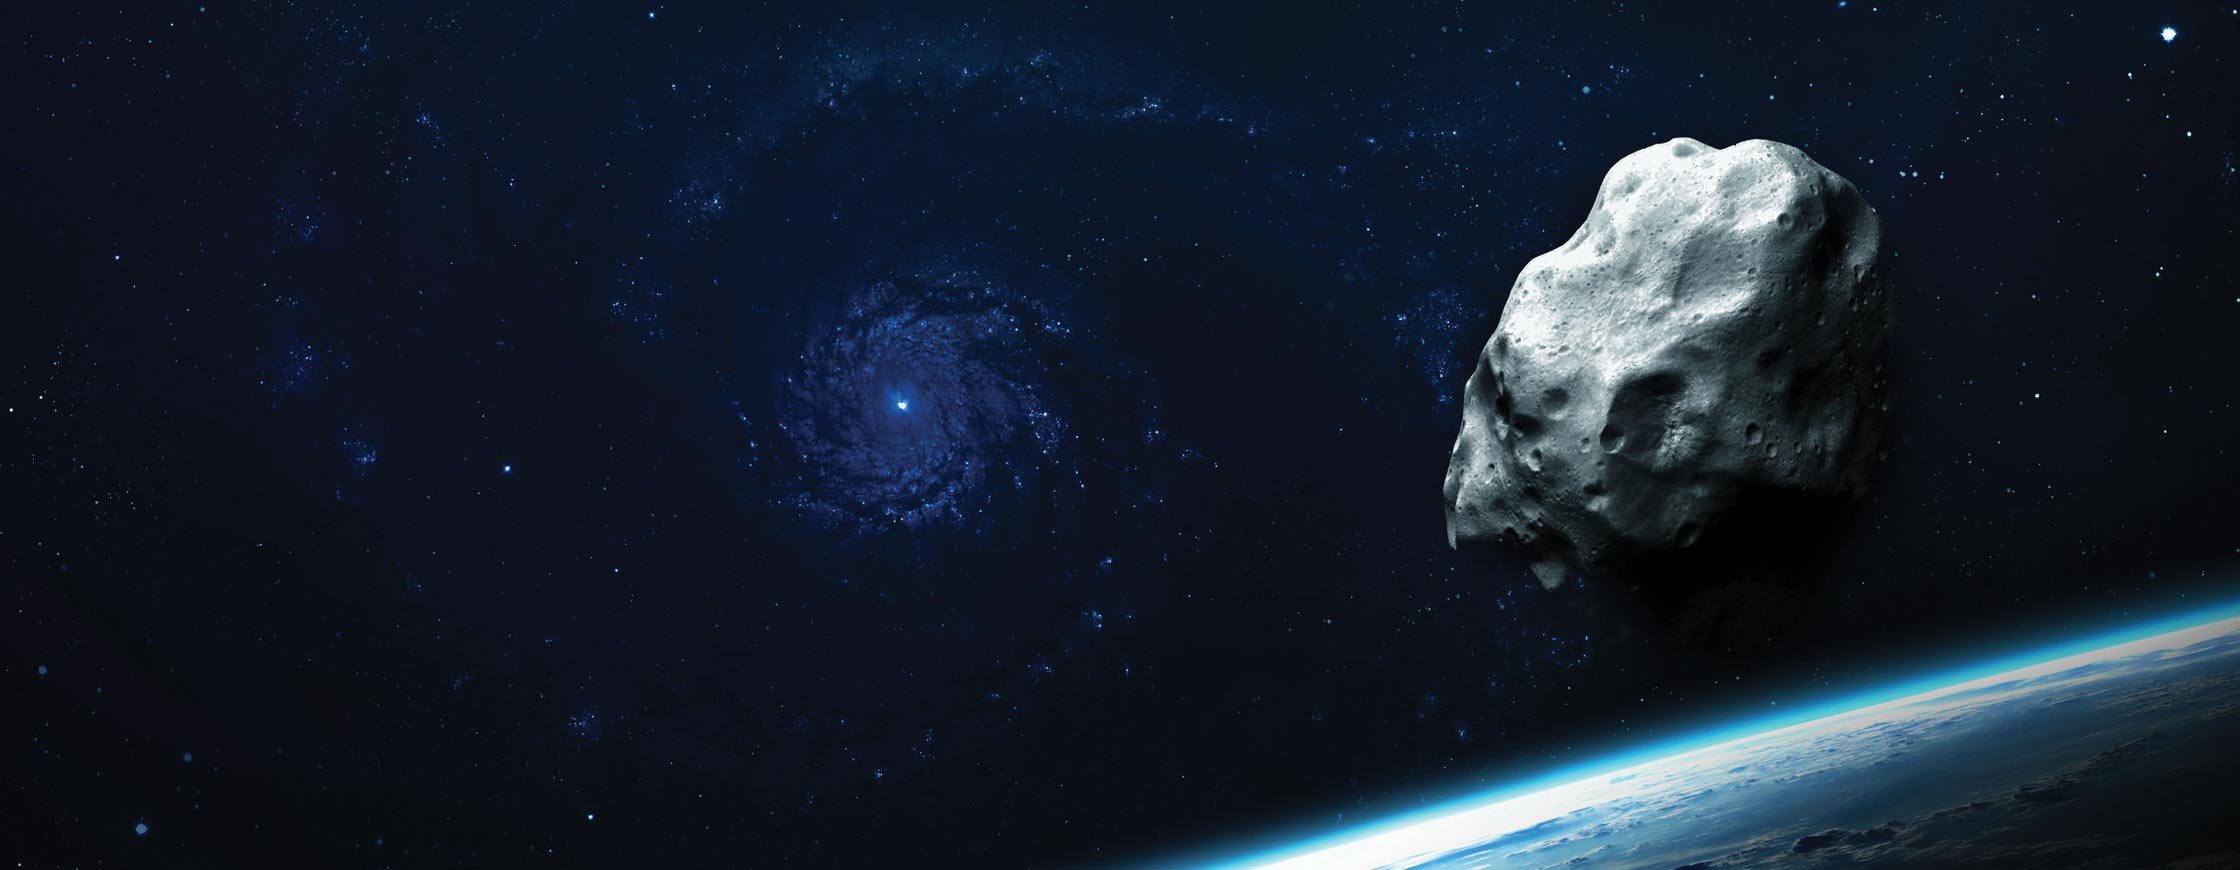 CONFERENCE PUBLIQUE JALLE ASTRONOMIE : Observation des astéroïdes géocroiseurs, vendredi 5 mai 2023